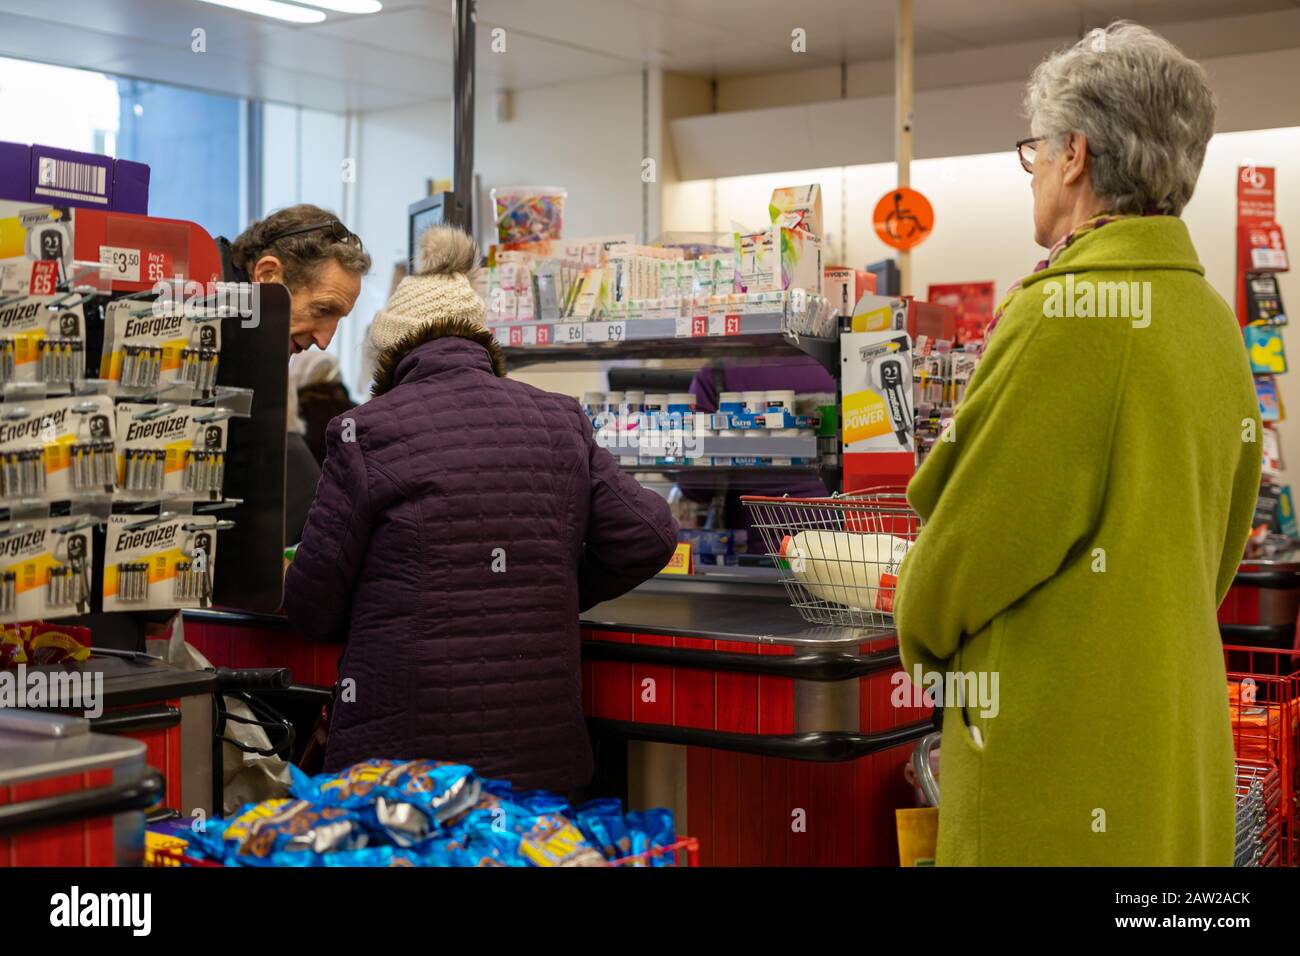 Käufer stehen an der Kasse eines Supermarktes Schlange und legen Produkte auf das Förderband Stockfoto